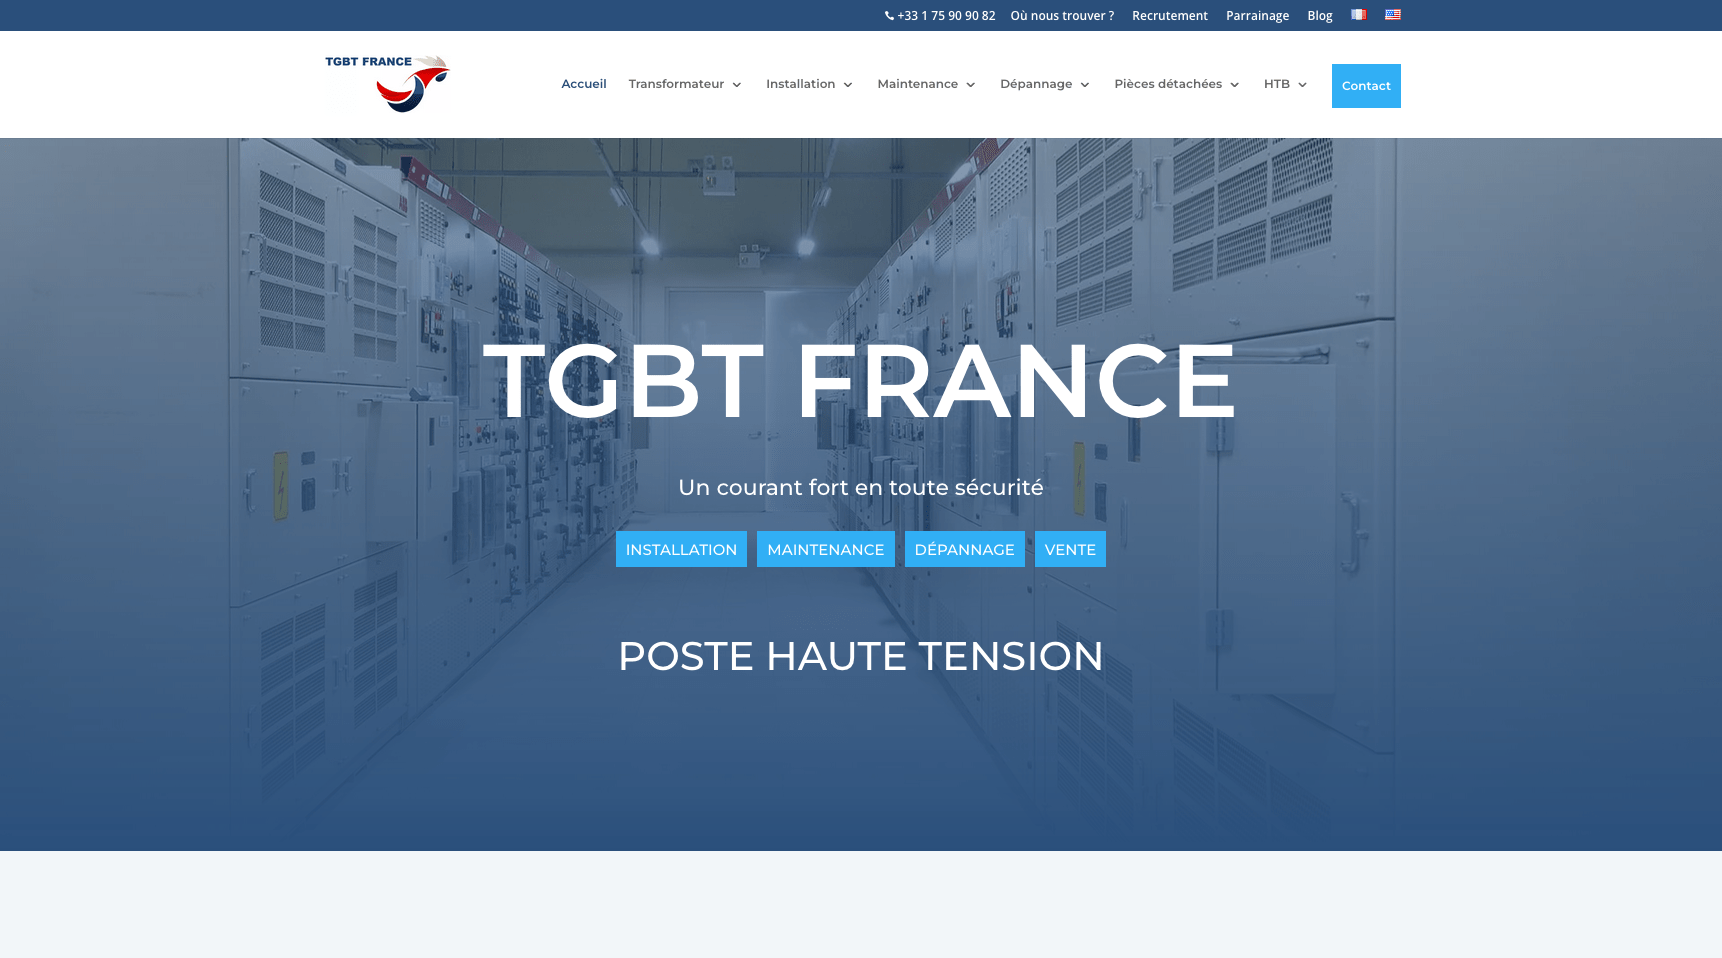 TGBT France